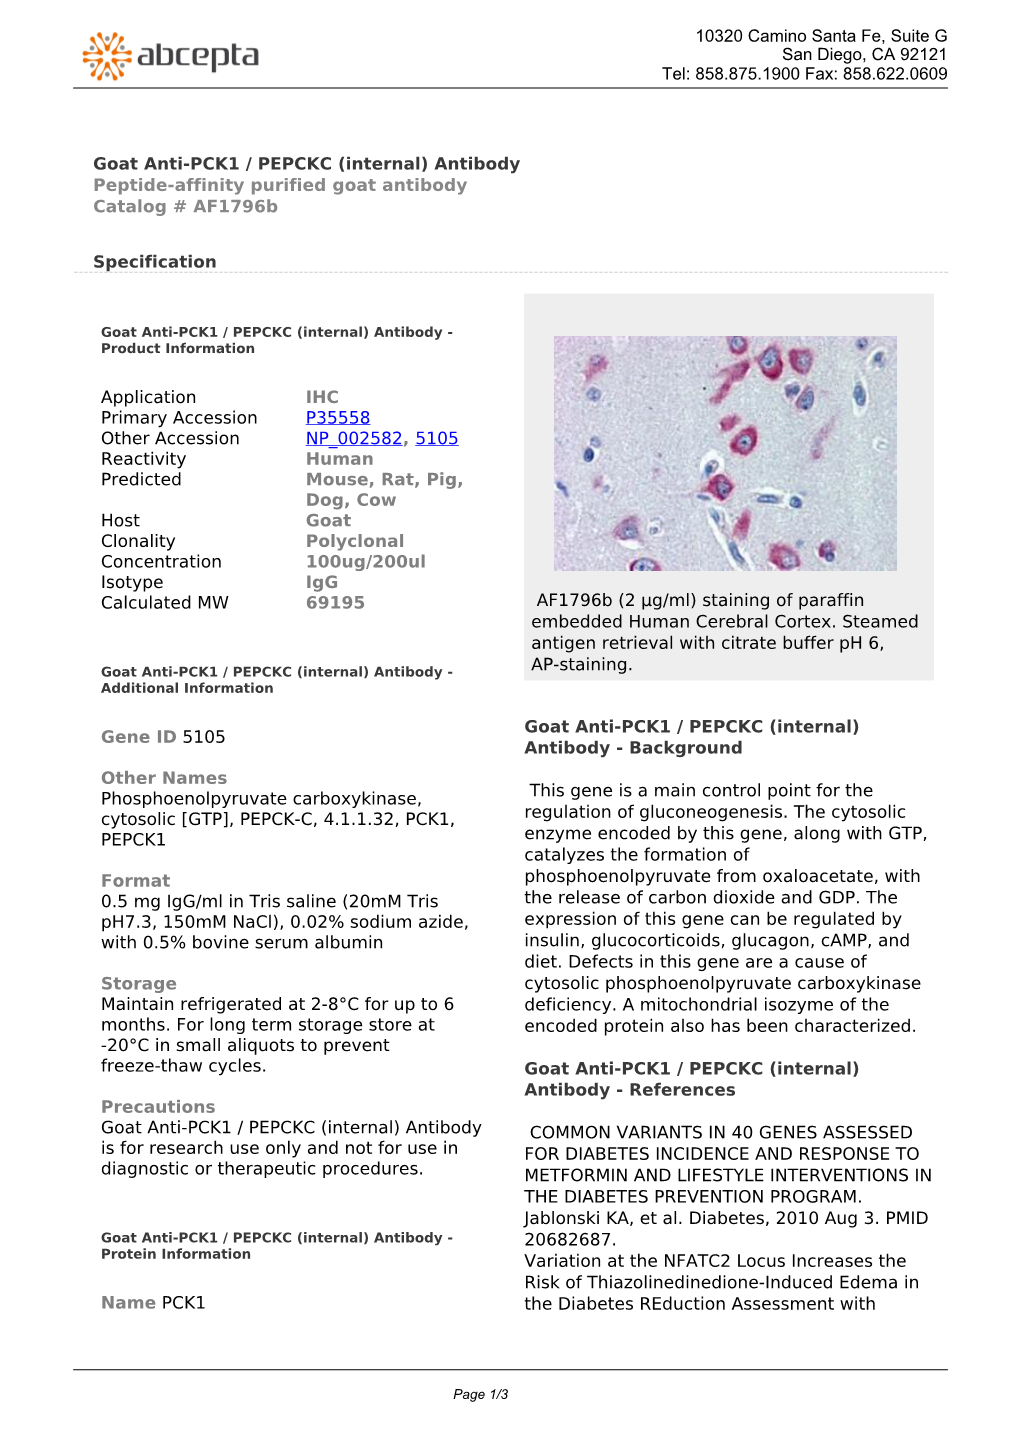 Goat Anti-PCK1 / PEPCKC (Internal) Antibody Peptide-Affinity Purified Goat Antibody Catalog # Af1796b